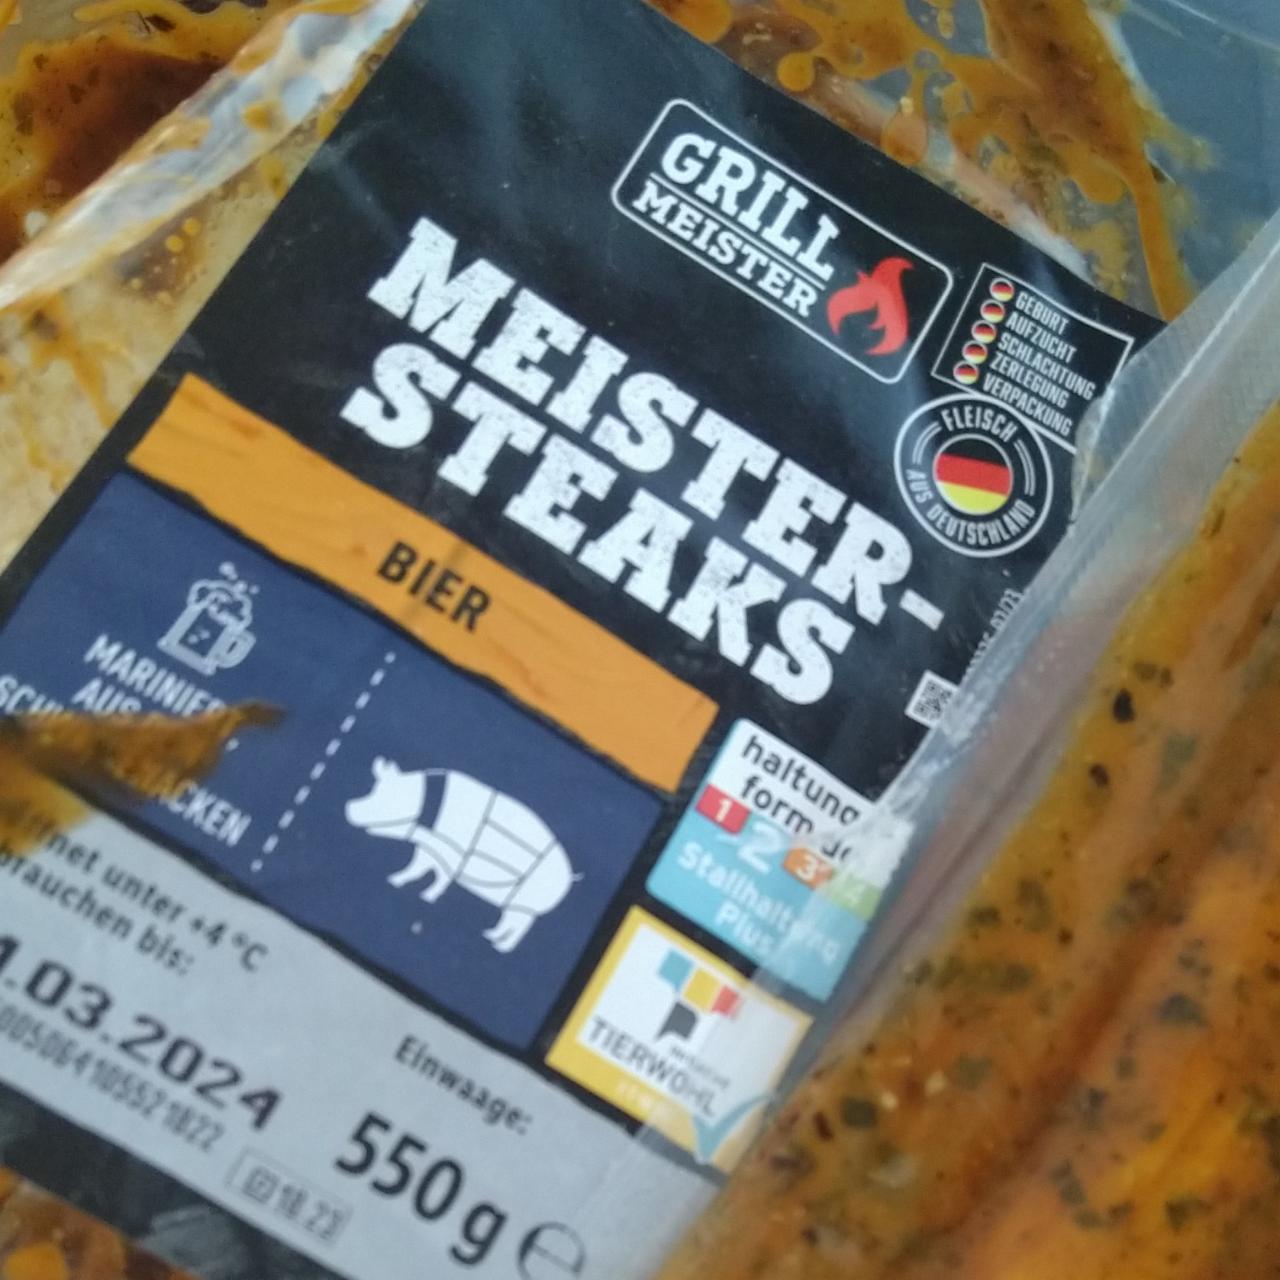 Fotografie - Meister Steaks Bier Grill Meister